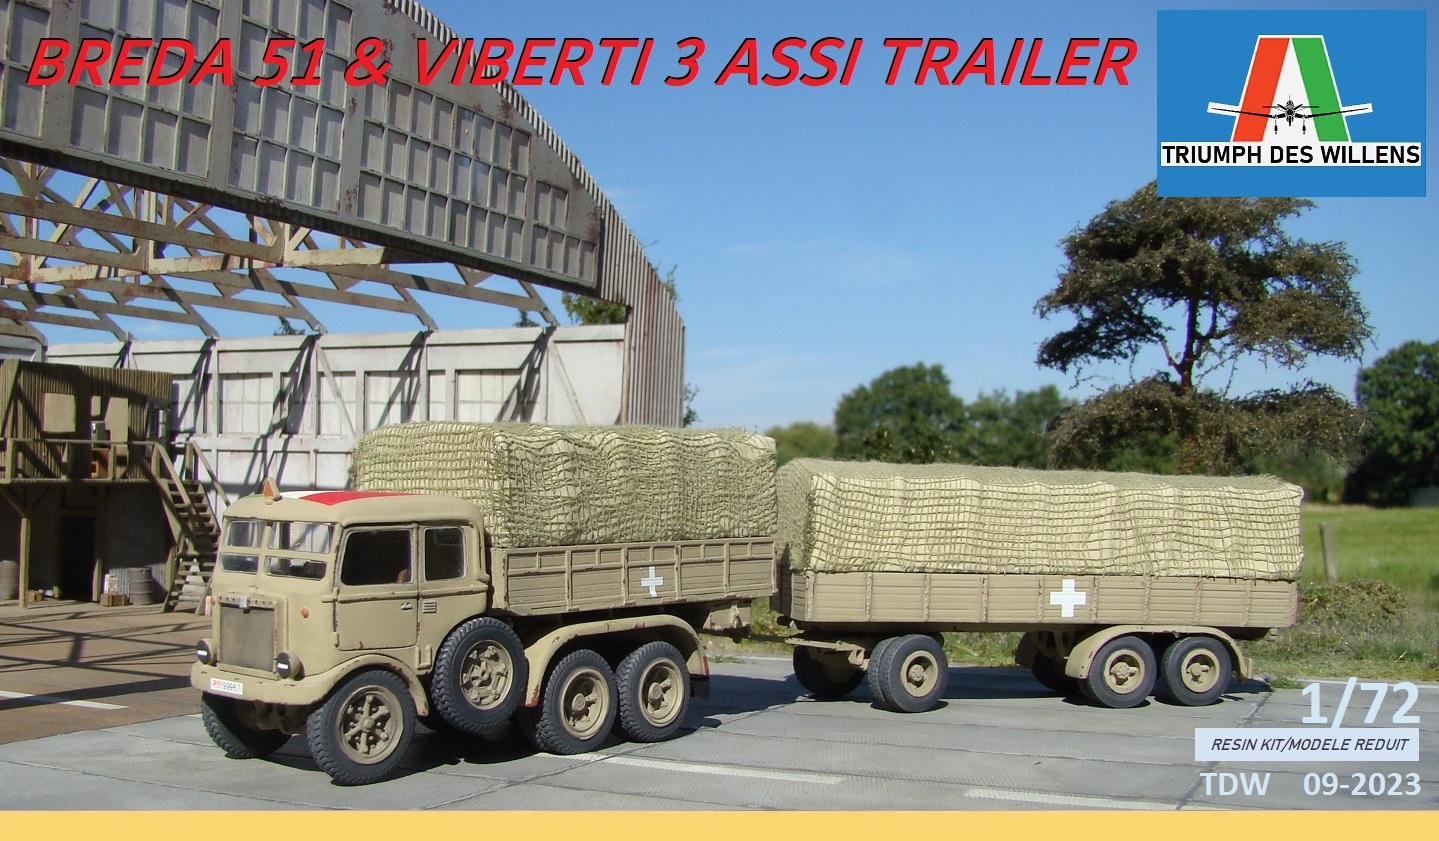 Breda 51 with Viberti trailer